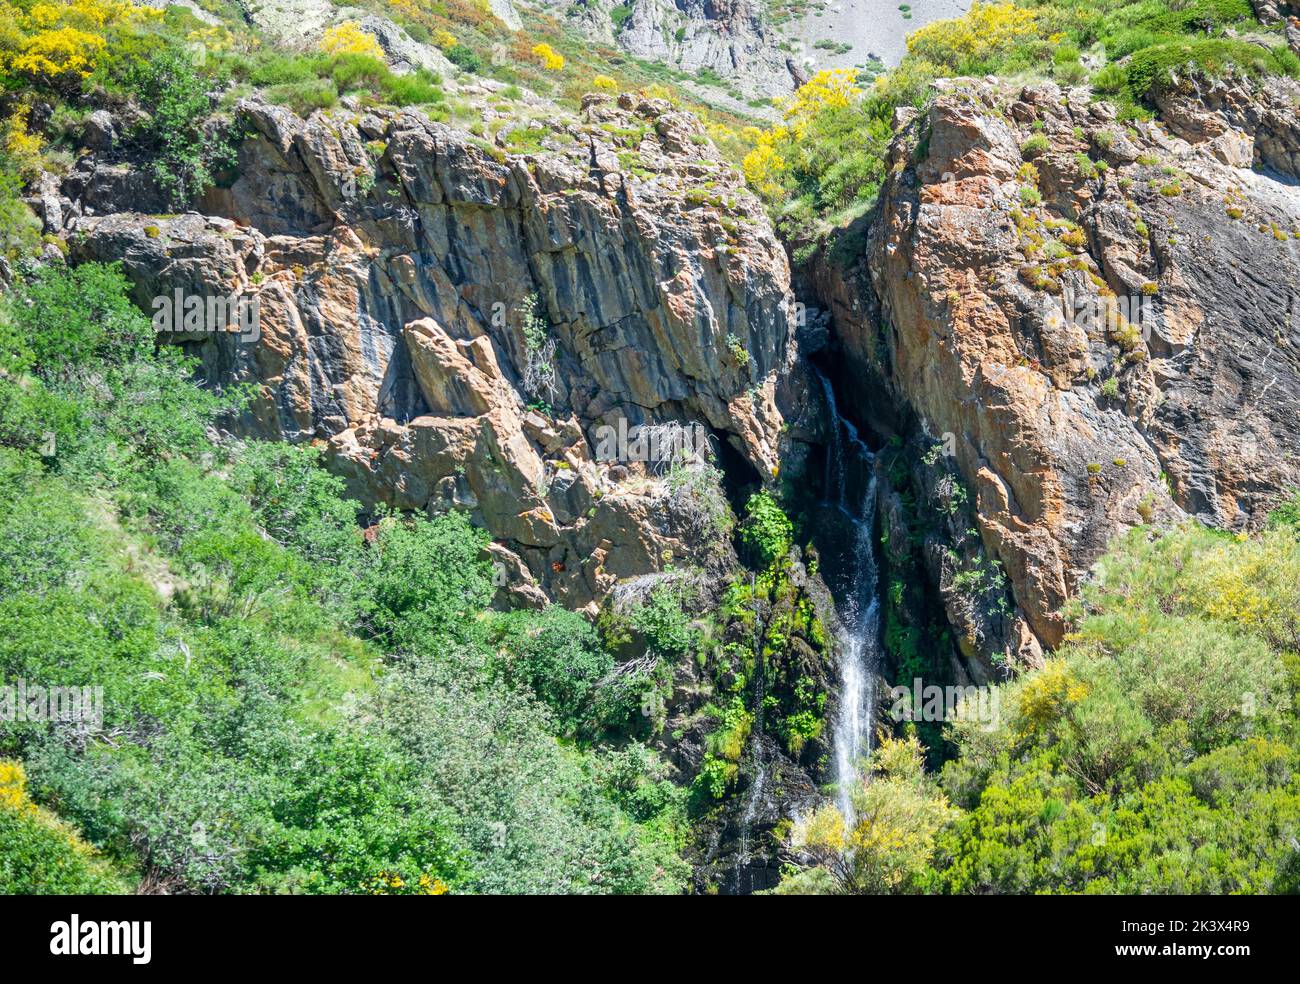 Cascada de Mazobre en el parque natural de la montaÃ±a Palentina, EspaÃ±a Stock Photo